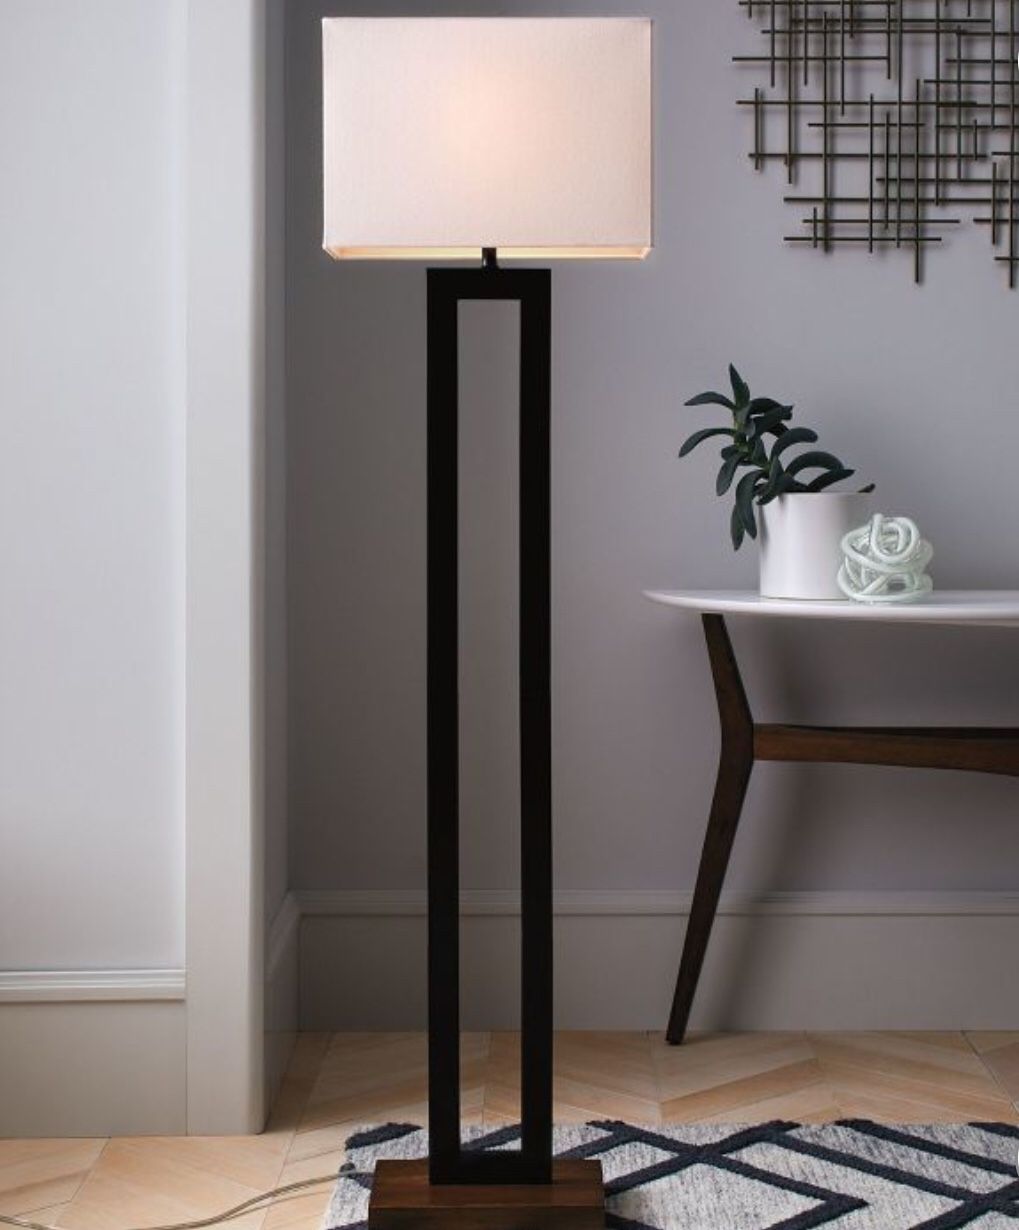 Brand new Floor Lamp w/ White shade